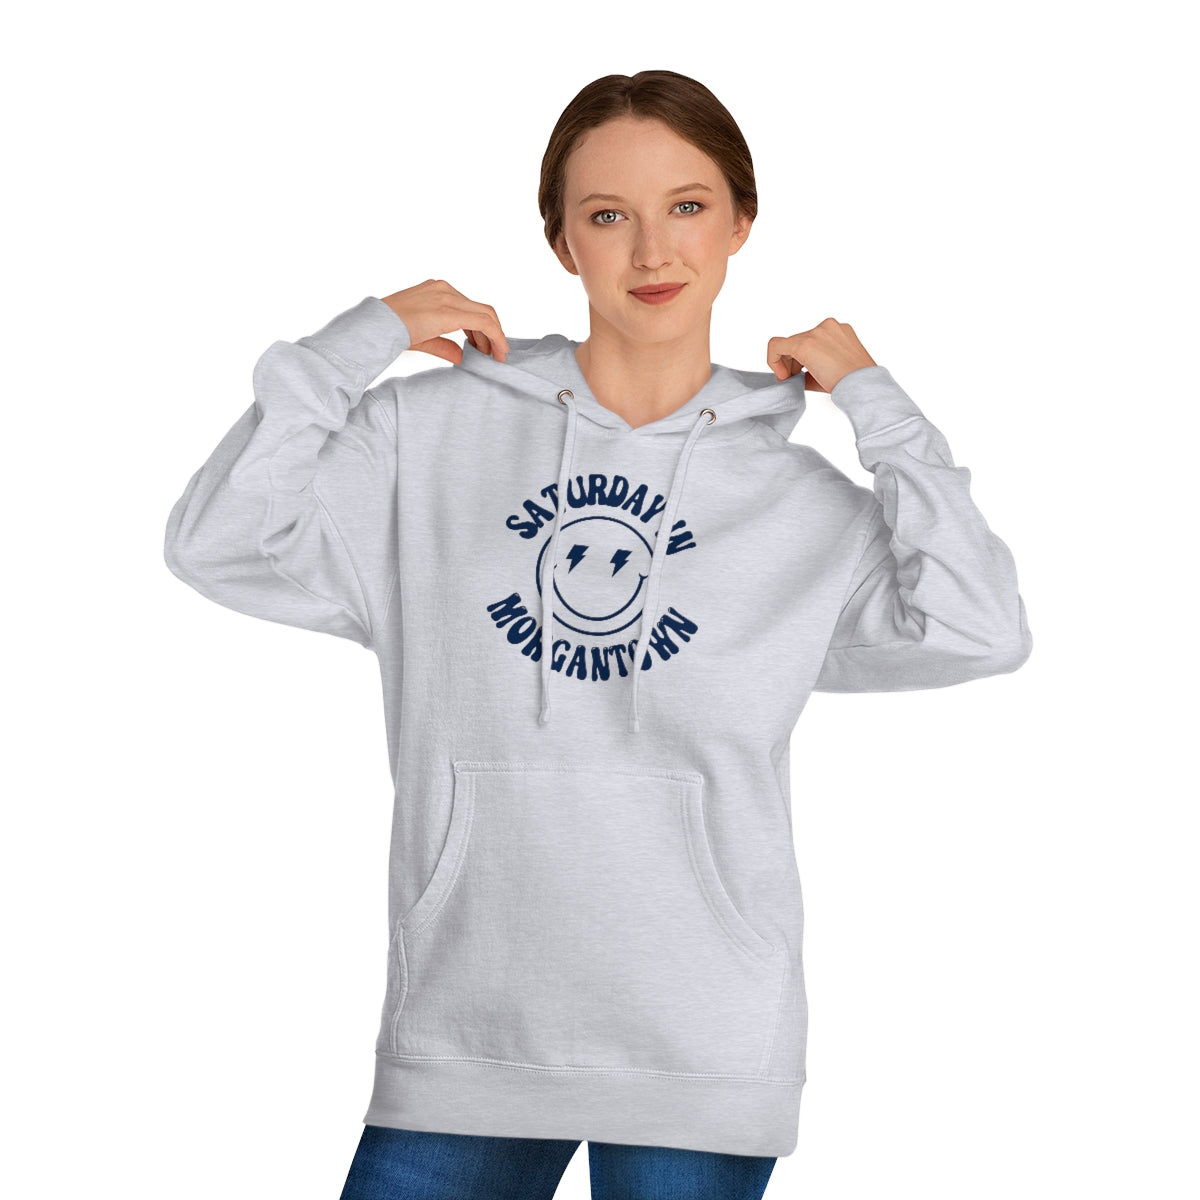 Smiley Morgantown Hooded Sweatshirt - GG - ITC